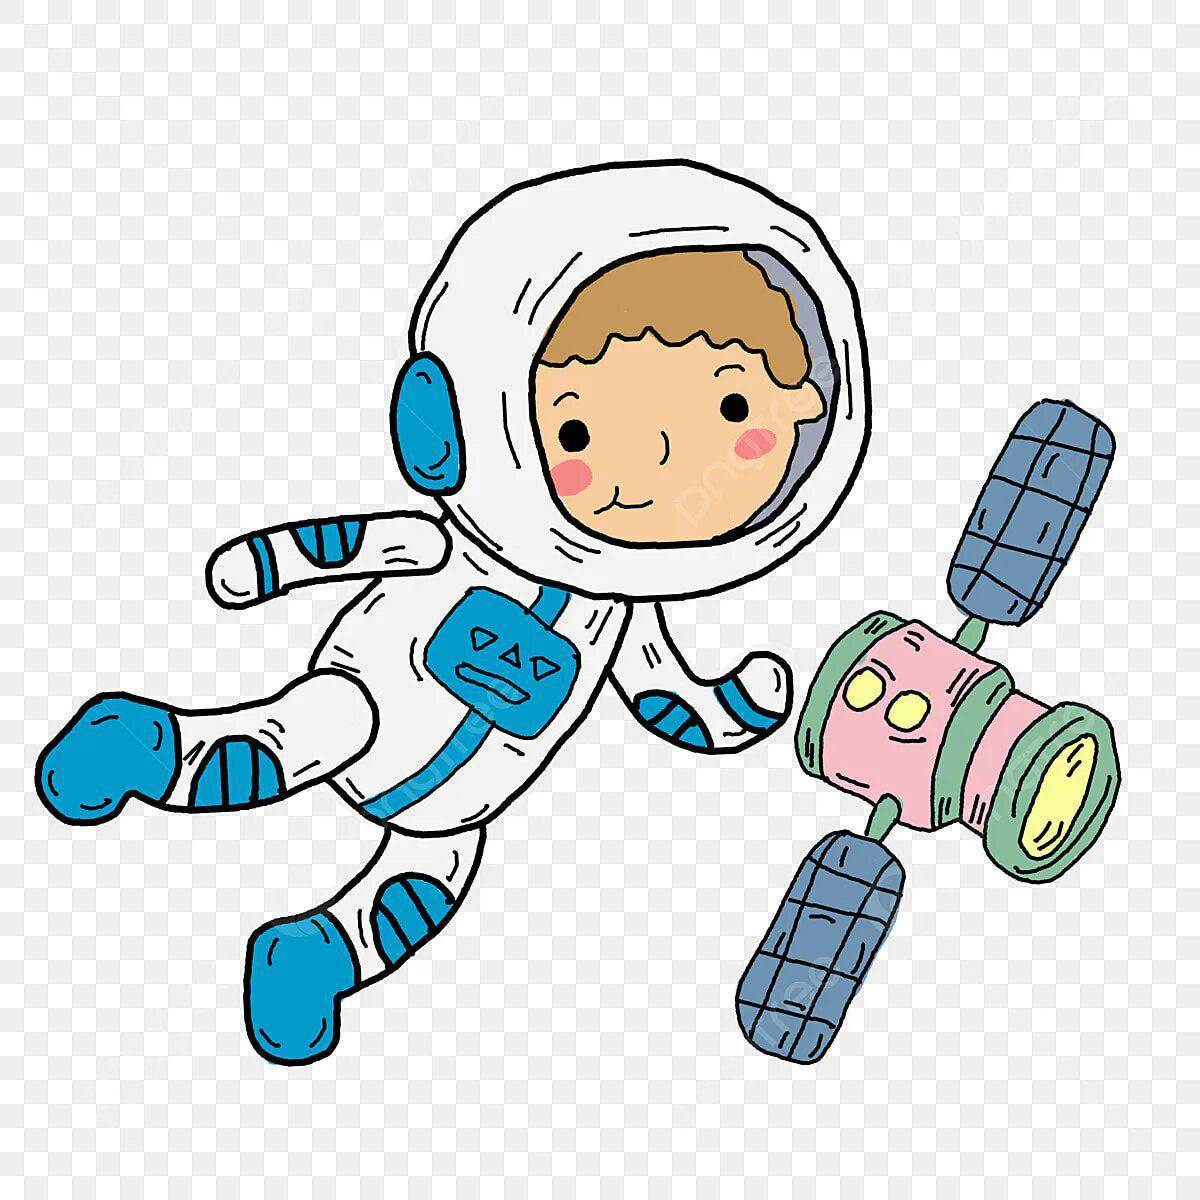 Космонавт цветной. Космонавт мультяшный. Космонавт мультяшка. Космонавт для детей. Космонавт на белом фоне.